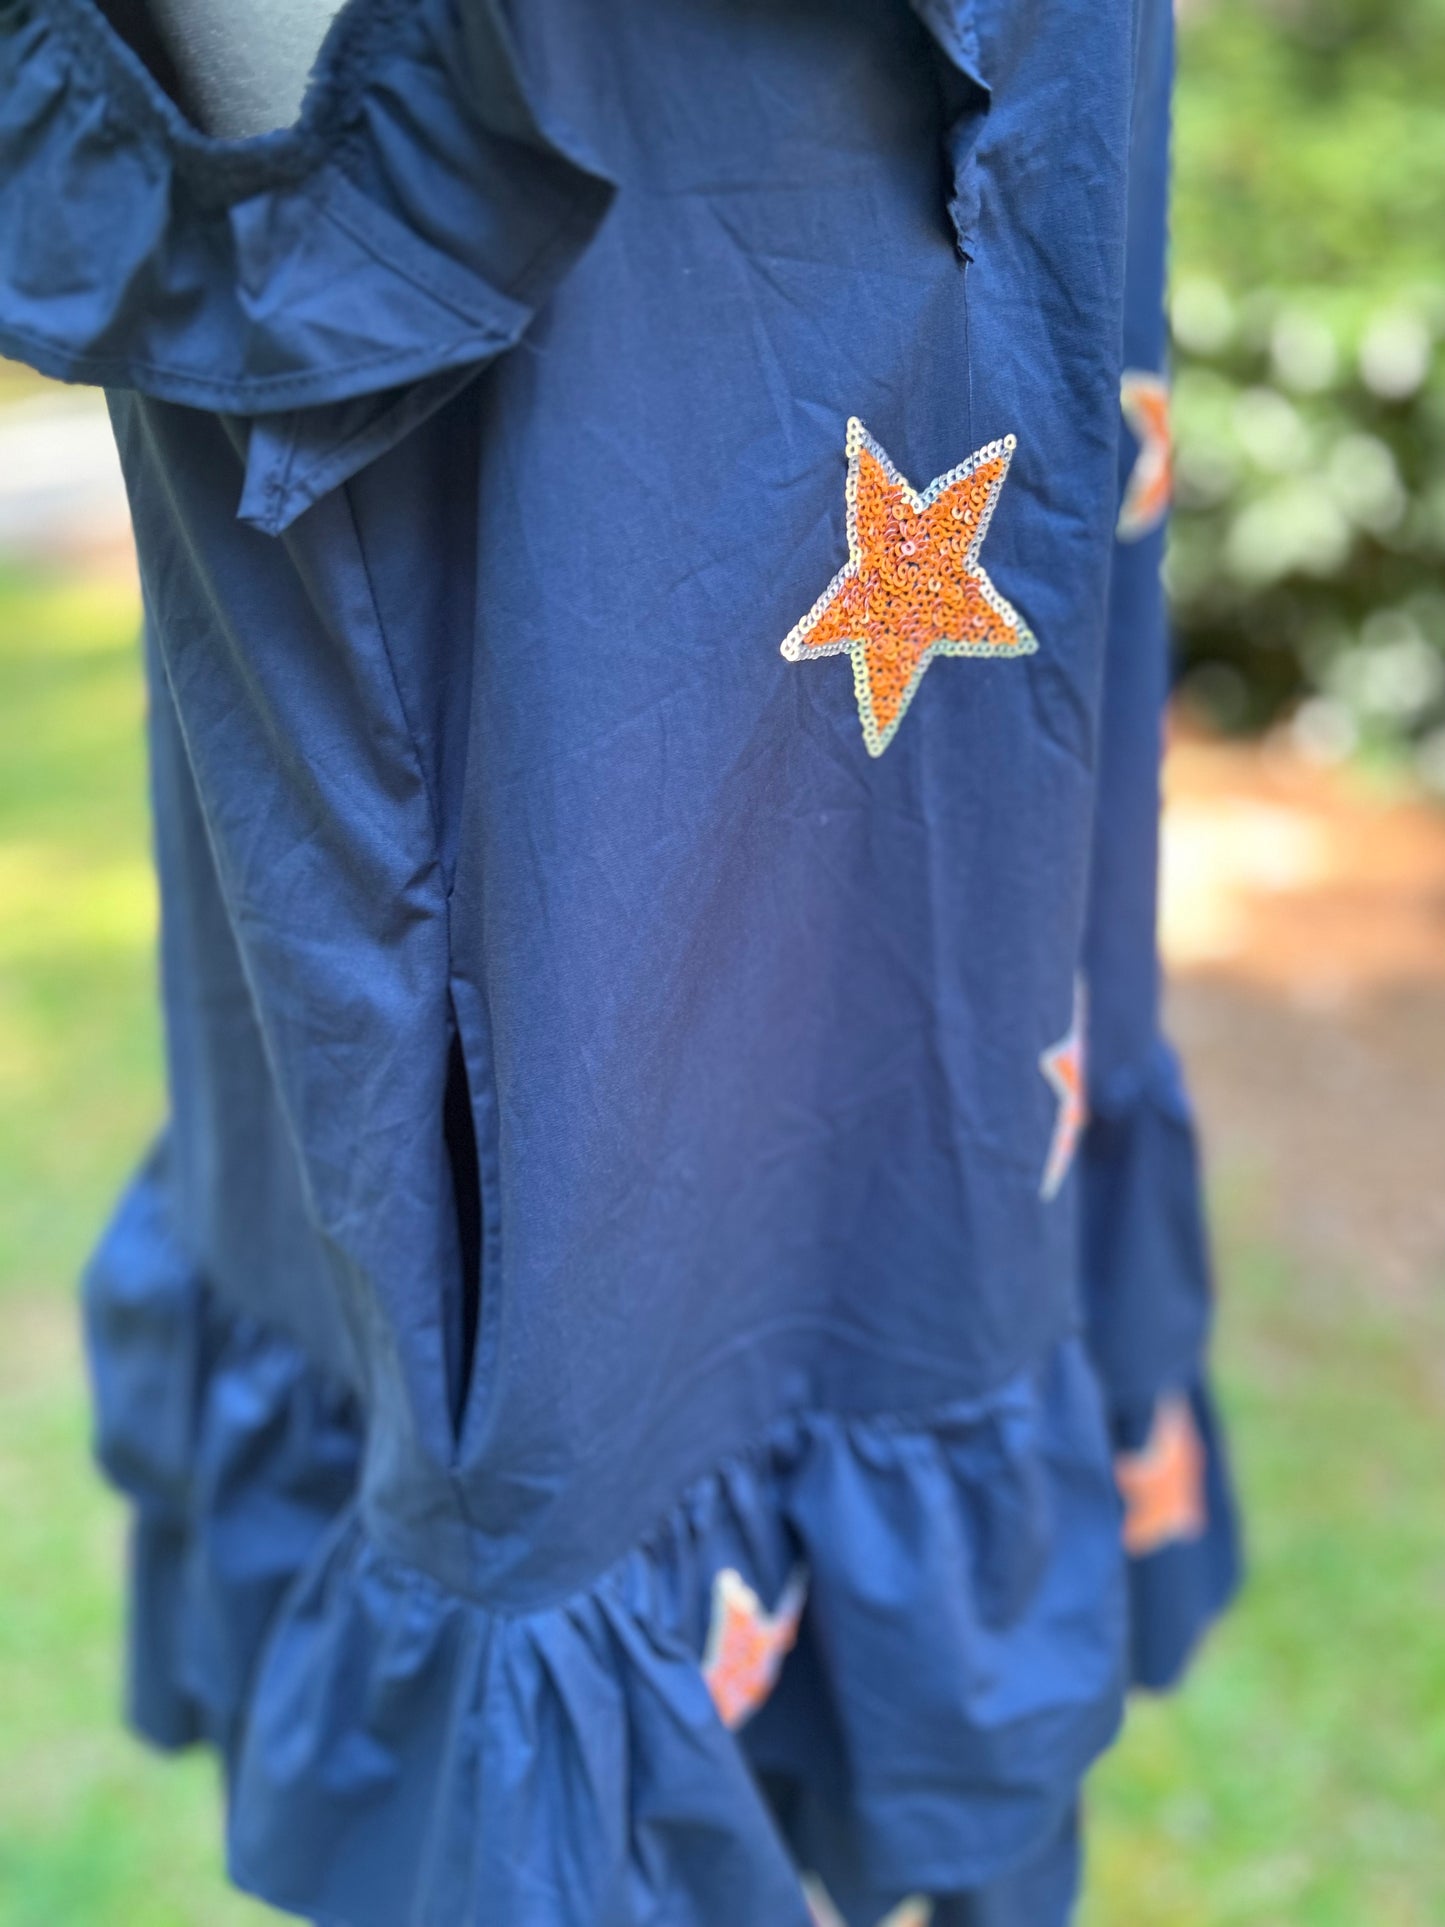 Navy + orange stars